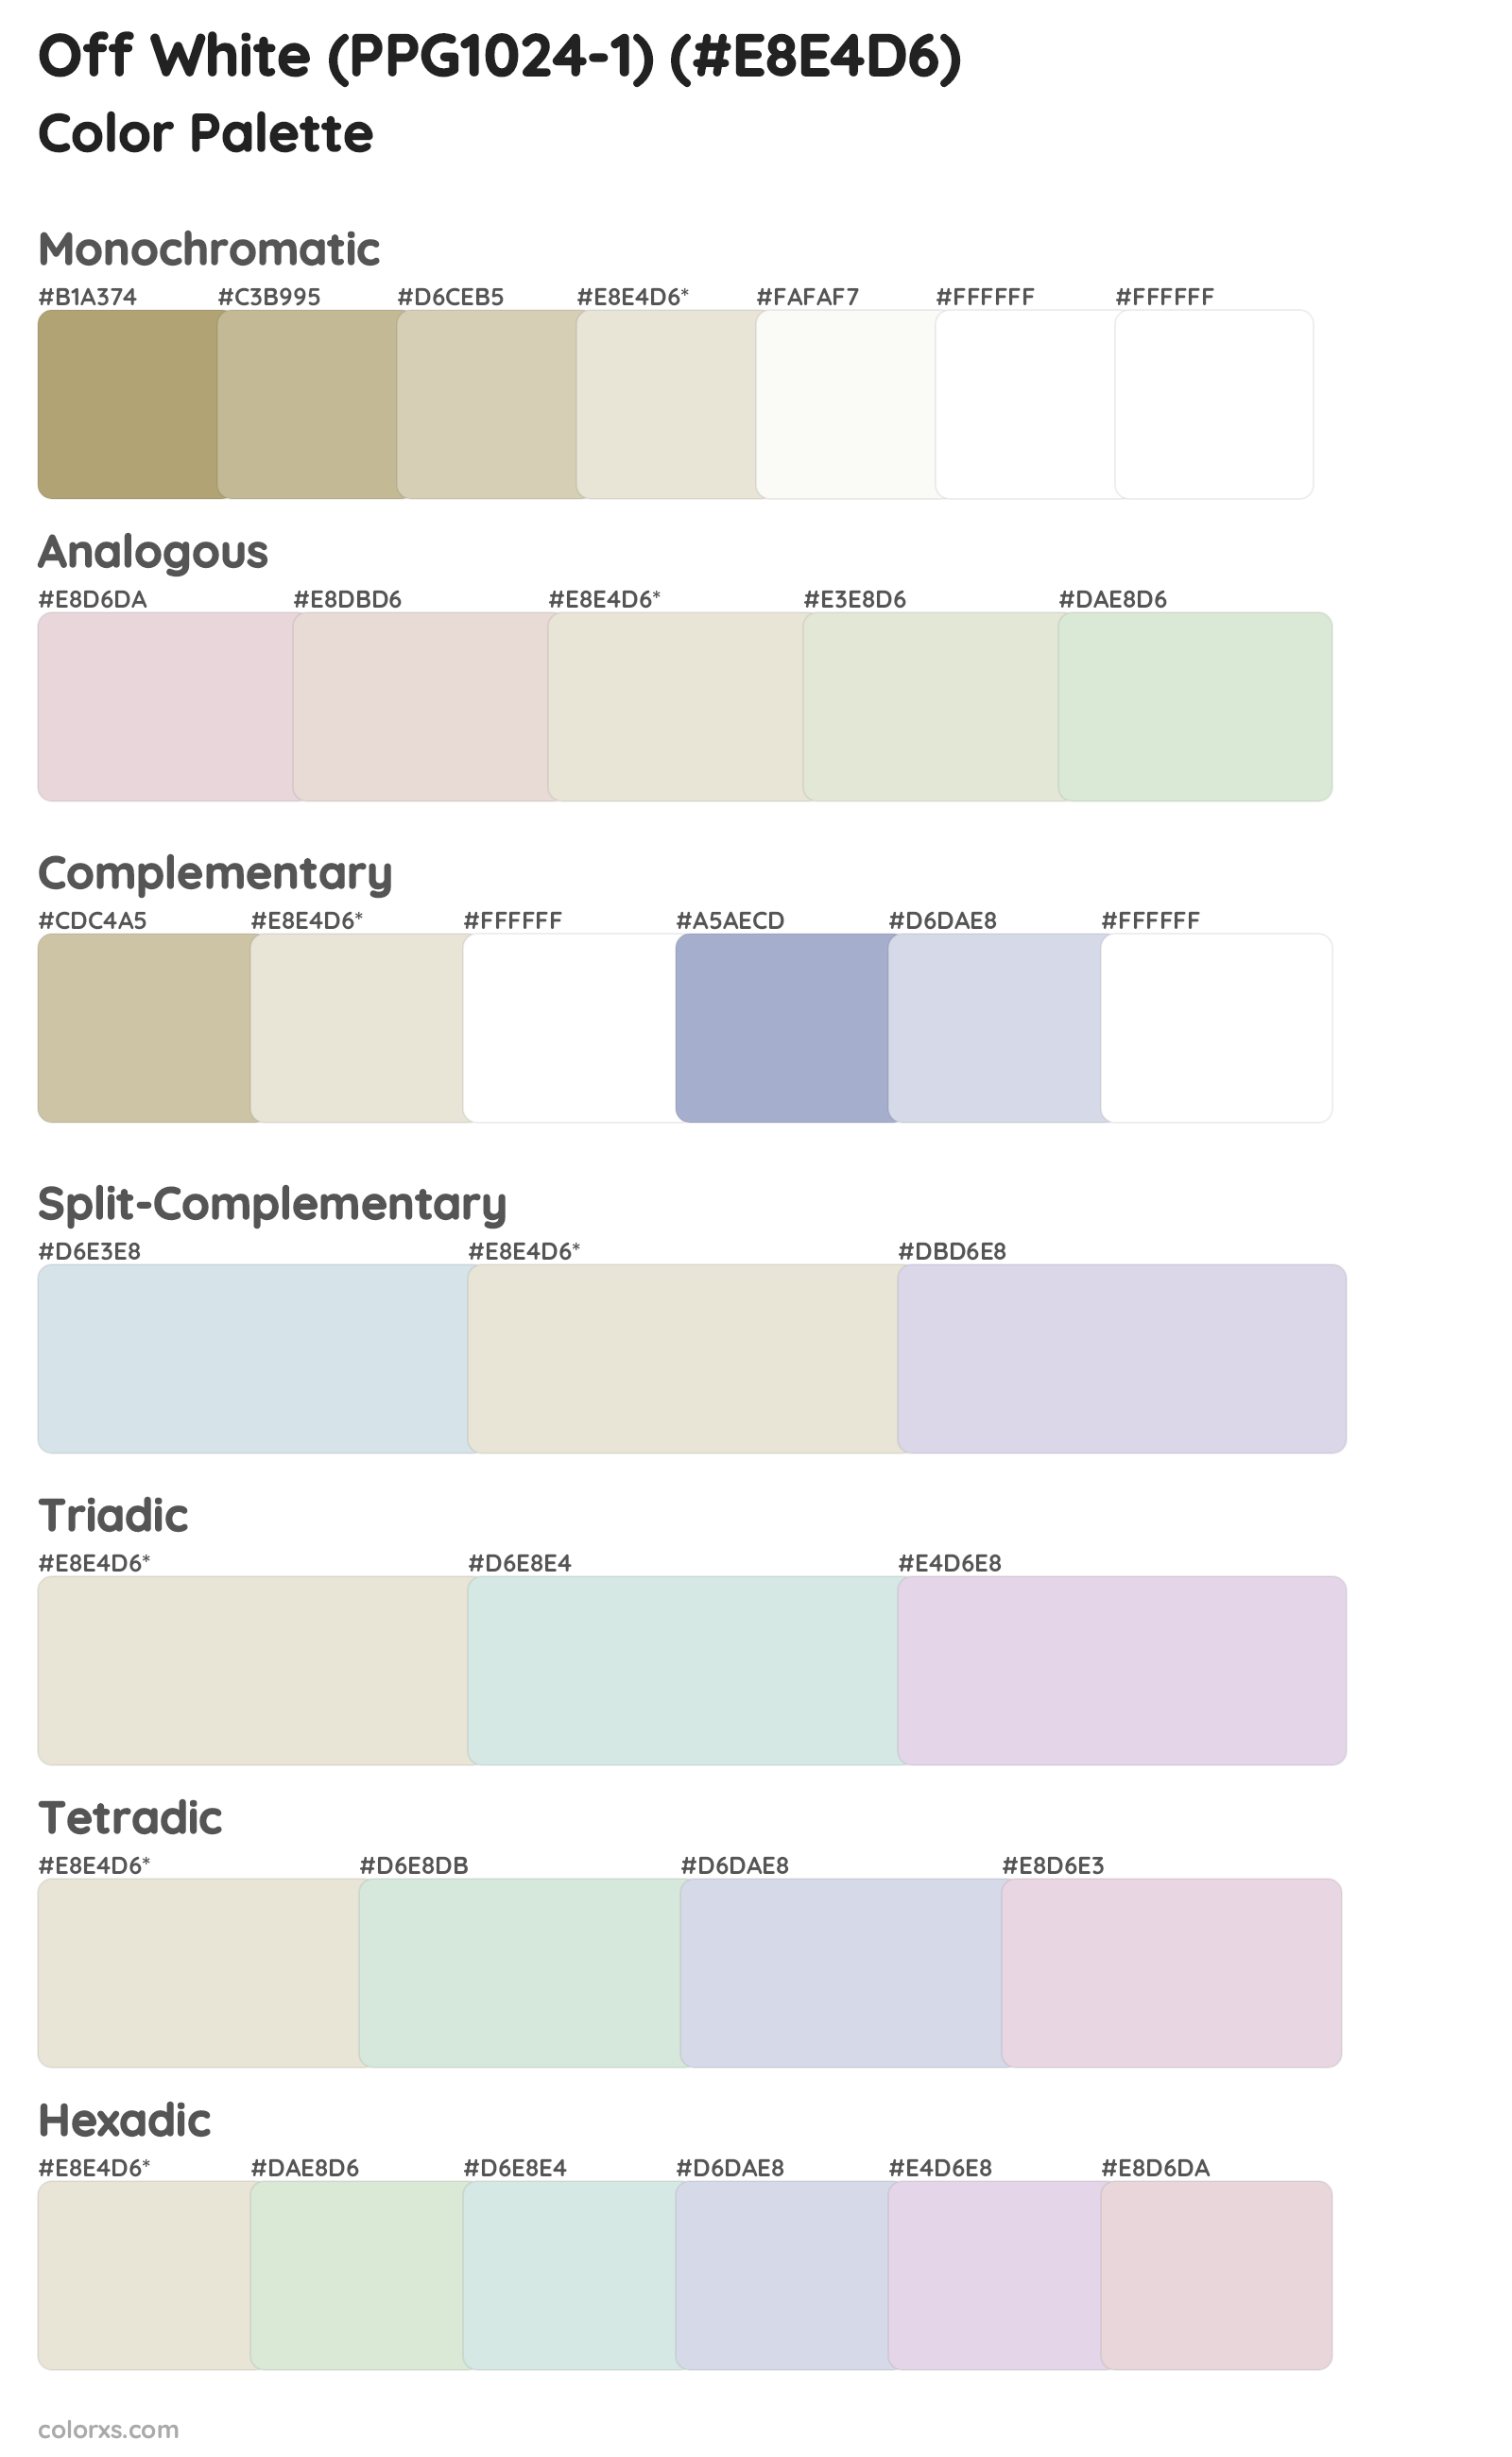 Off White (PPG1024-1) Color Scheme Palettes